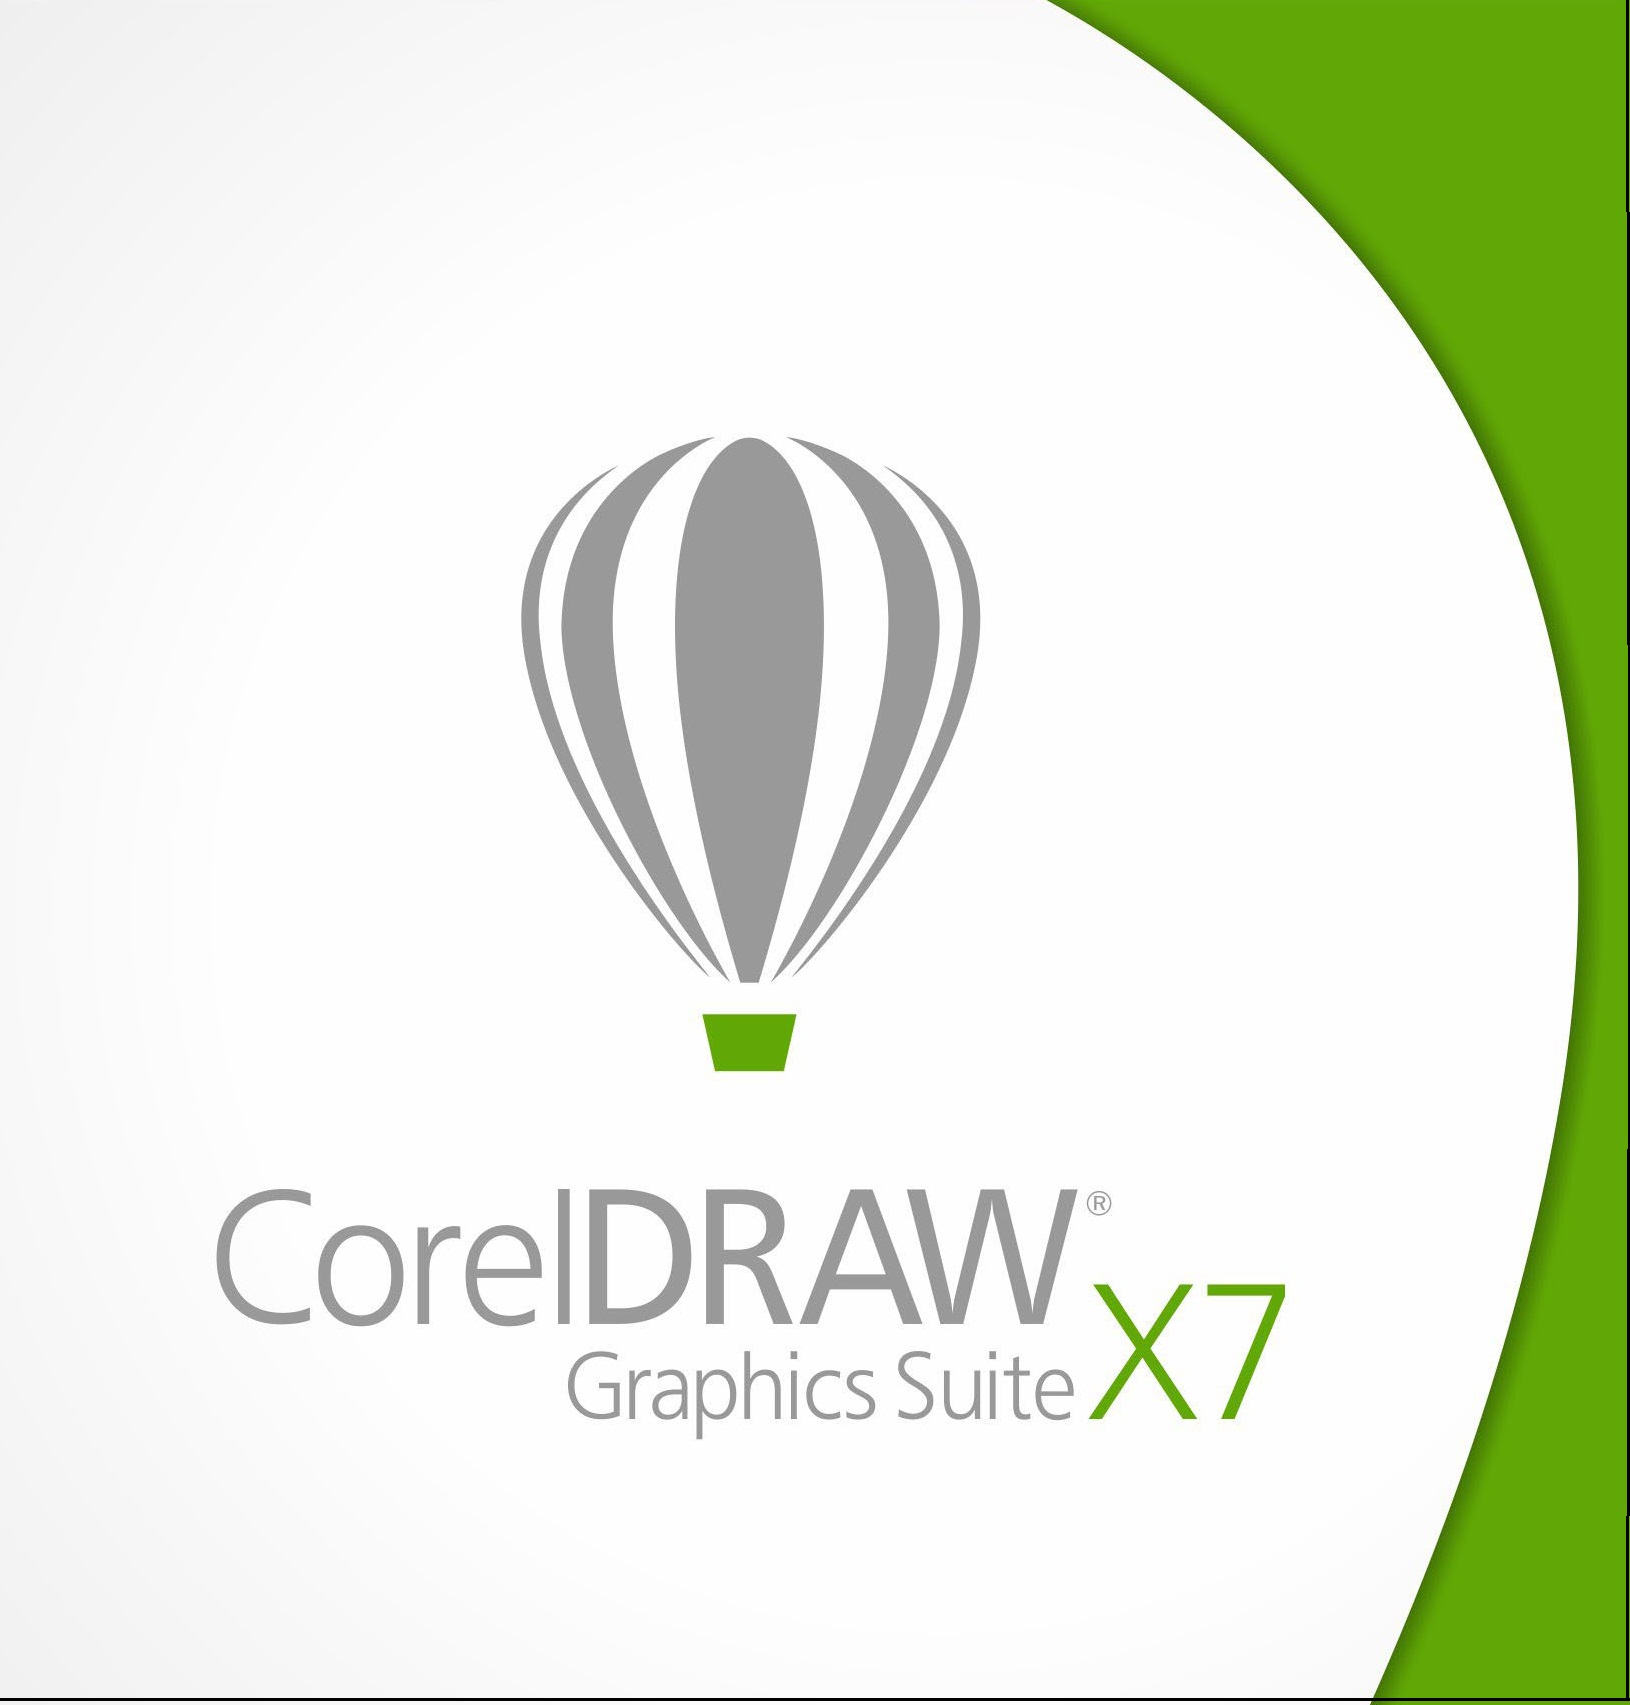 CorelDraw X7 Keygen With Serial Number & Activation Code 2020